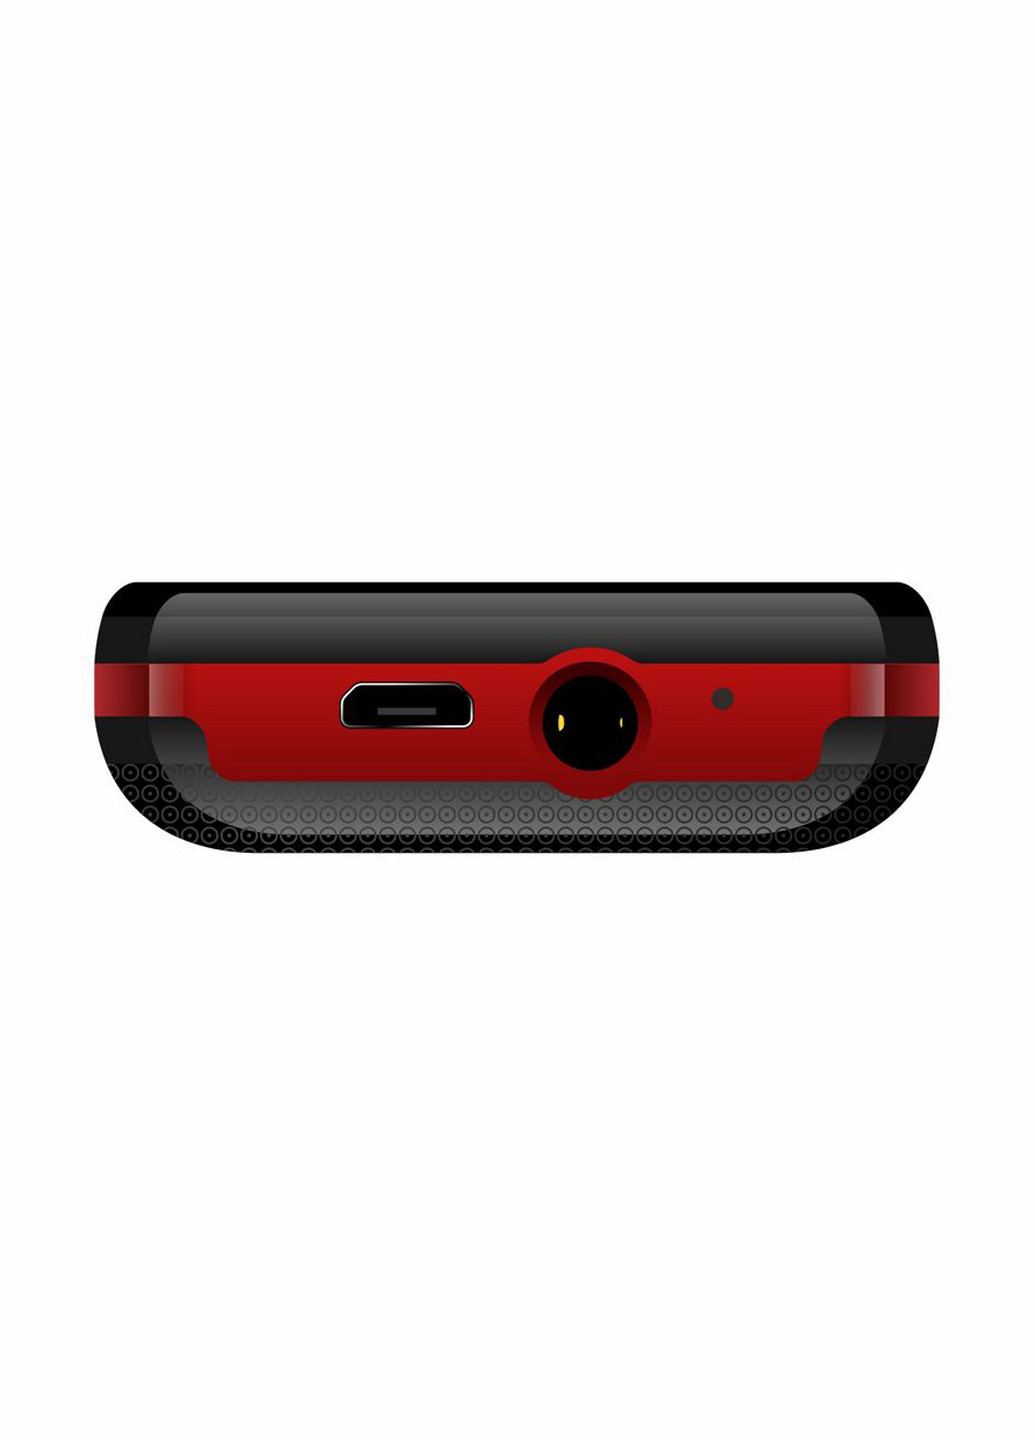 Мобильный телефон Astro a144 black/red (141068748)